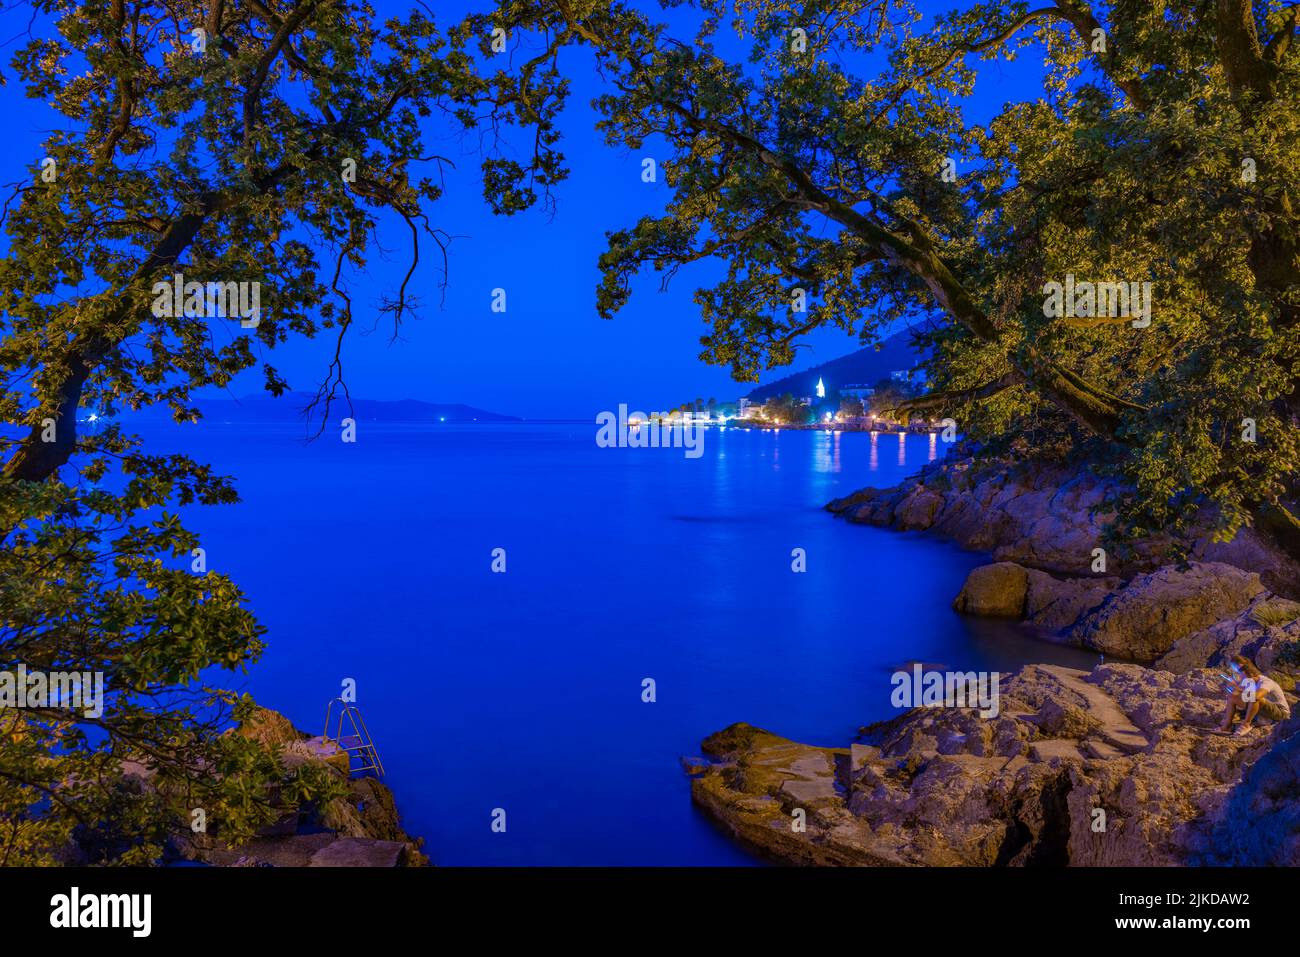 View of Lovran and Krk Island in background at dusk, Lovran, Kvarner Bay, Eastern Istria, Croatia, Europe Stock Photo